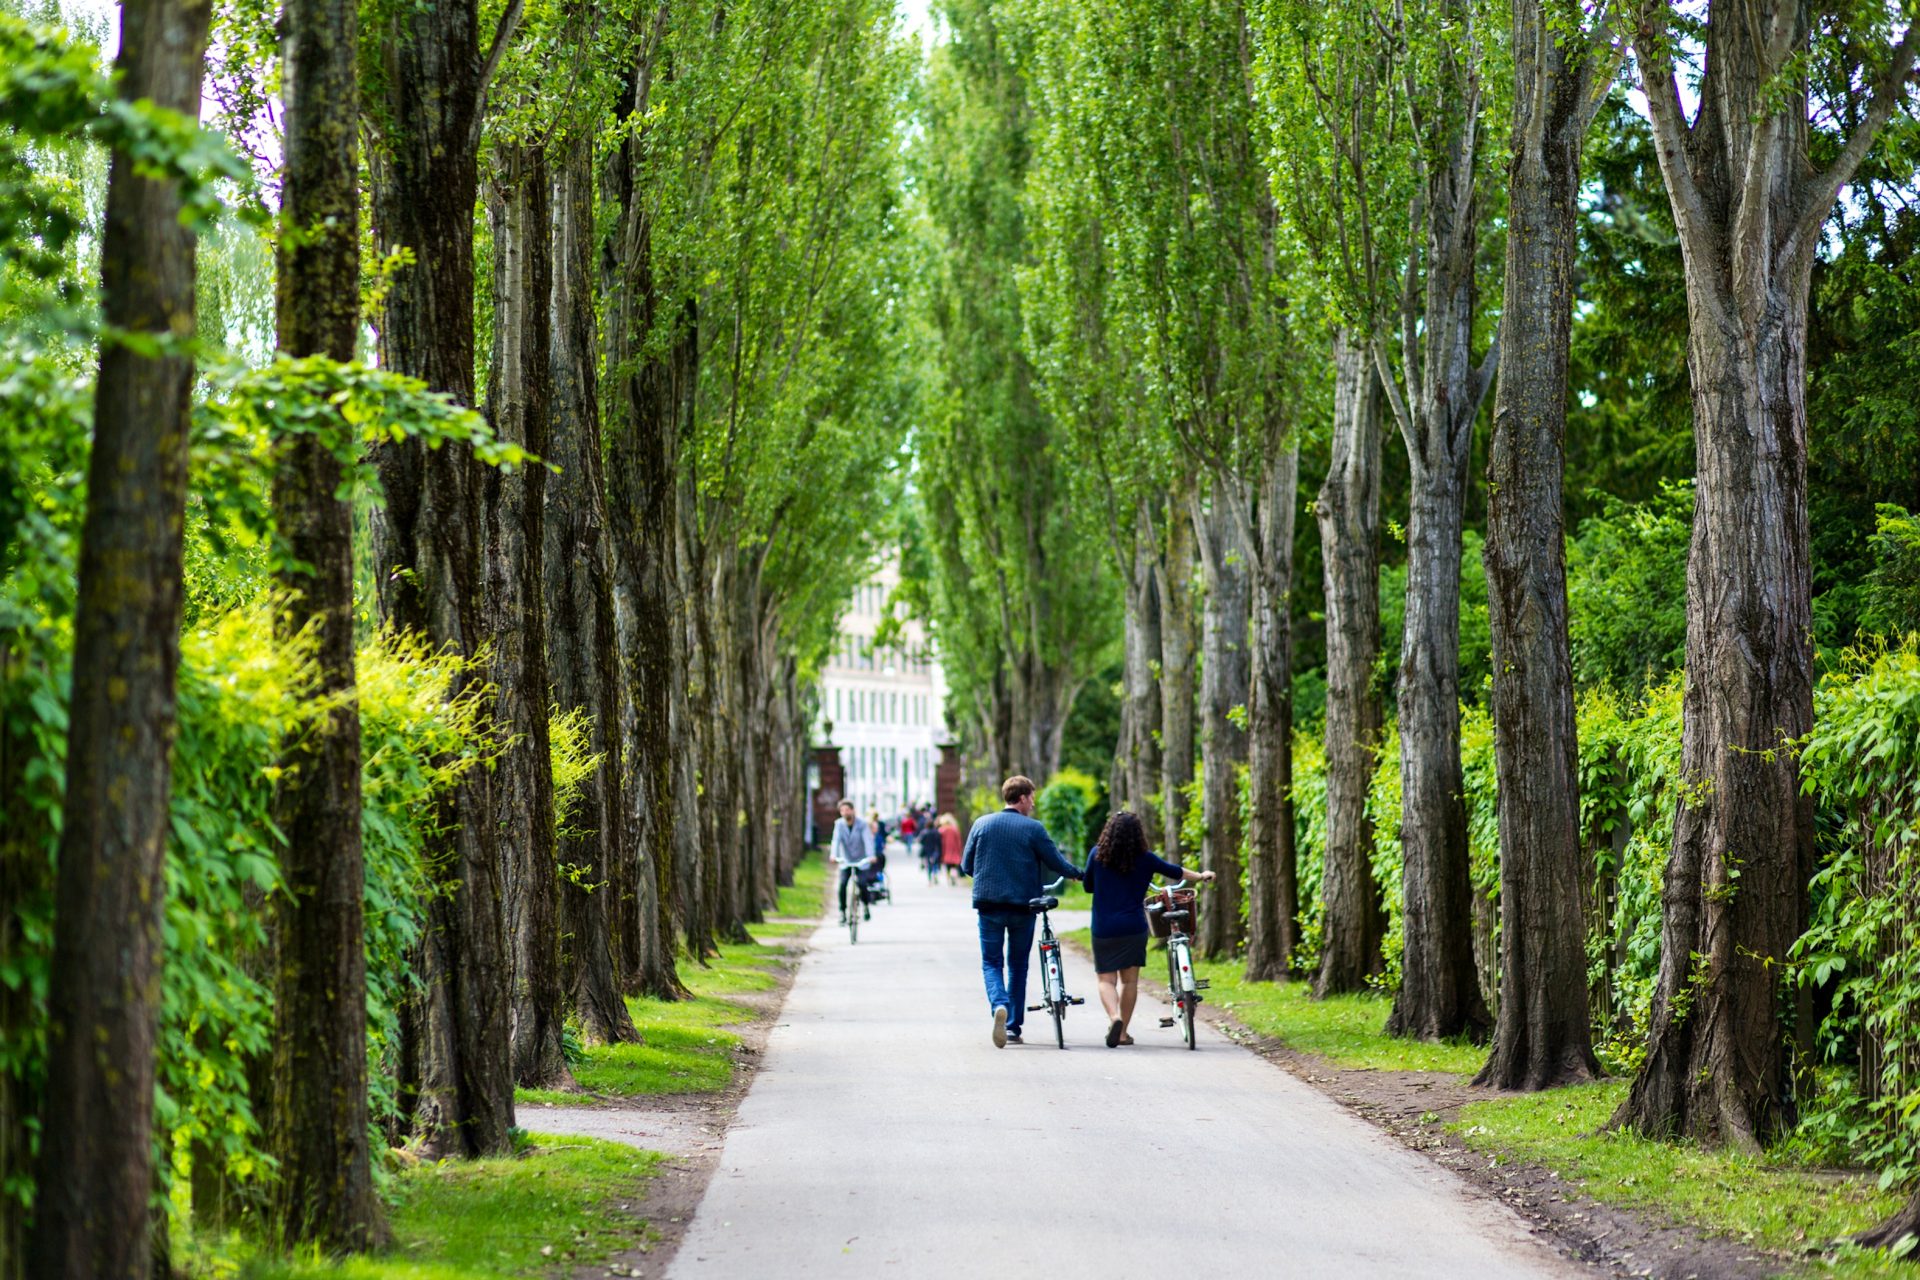 Assistens Cemetery (kirkegård) in Copenhagen, greenery and walking path